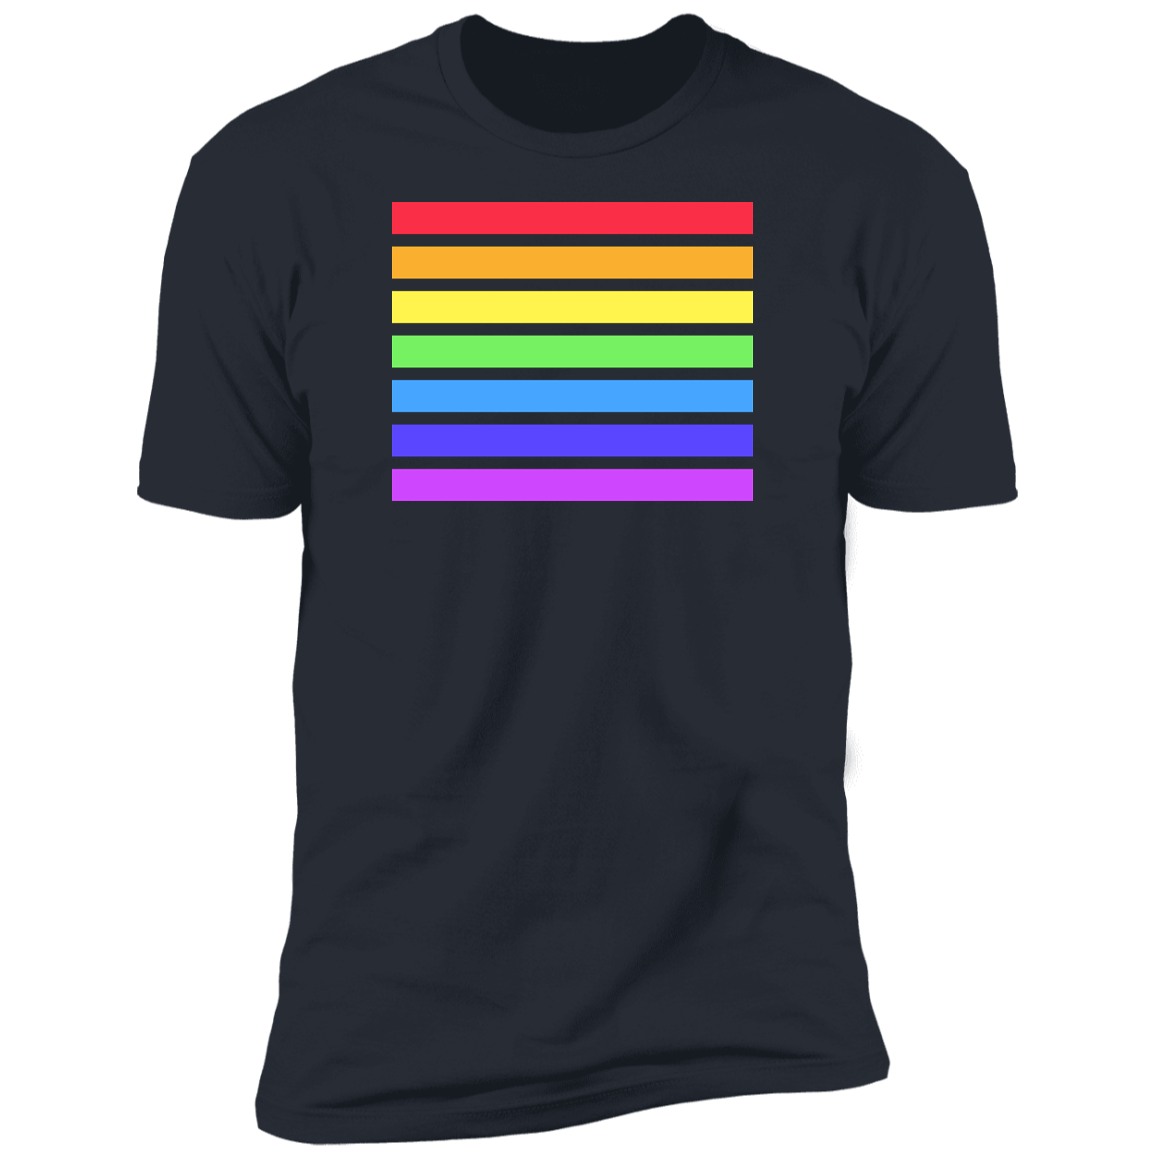 Pride Stripes T-Shirt